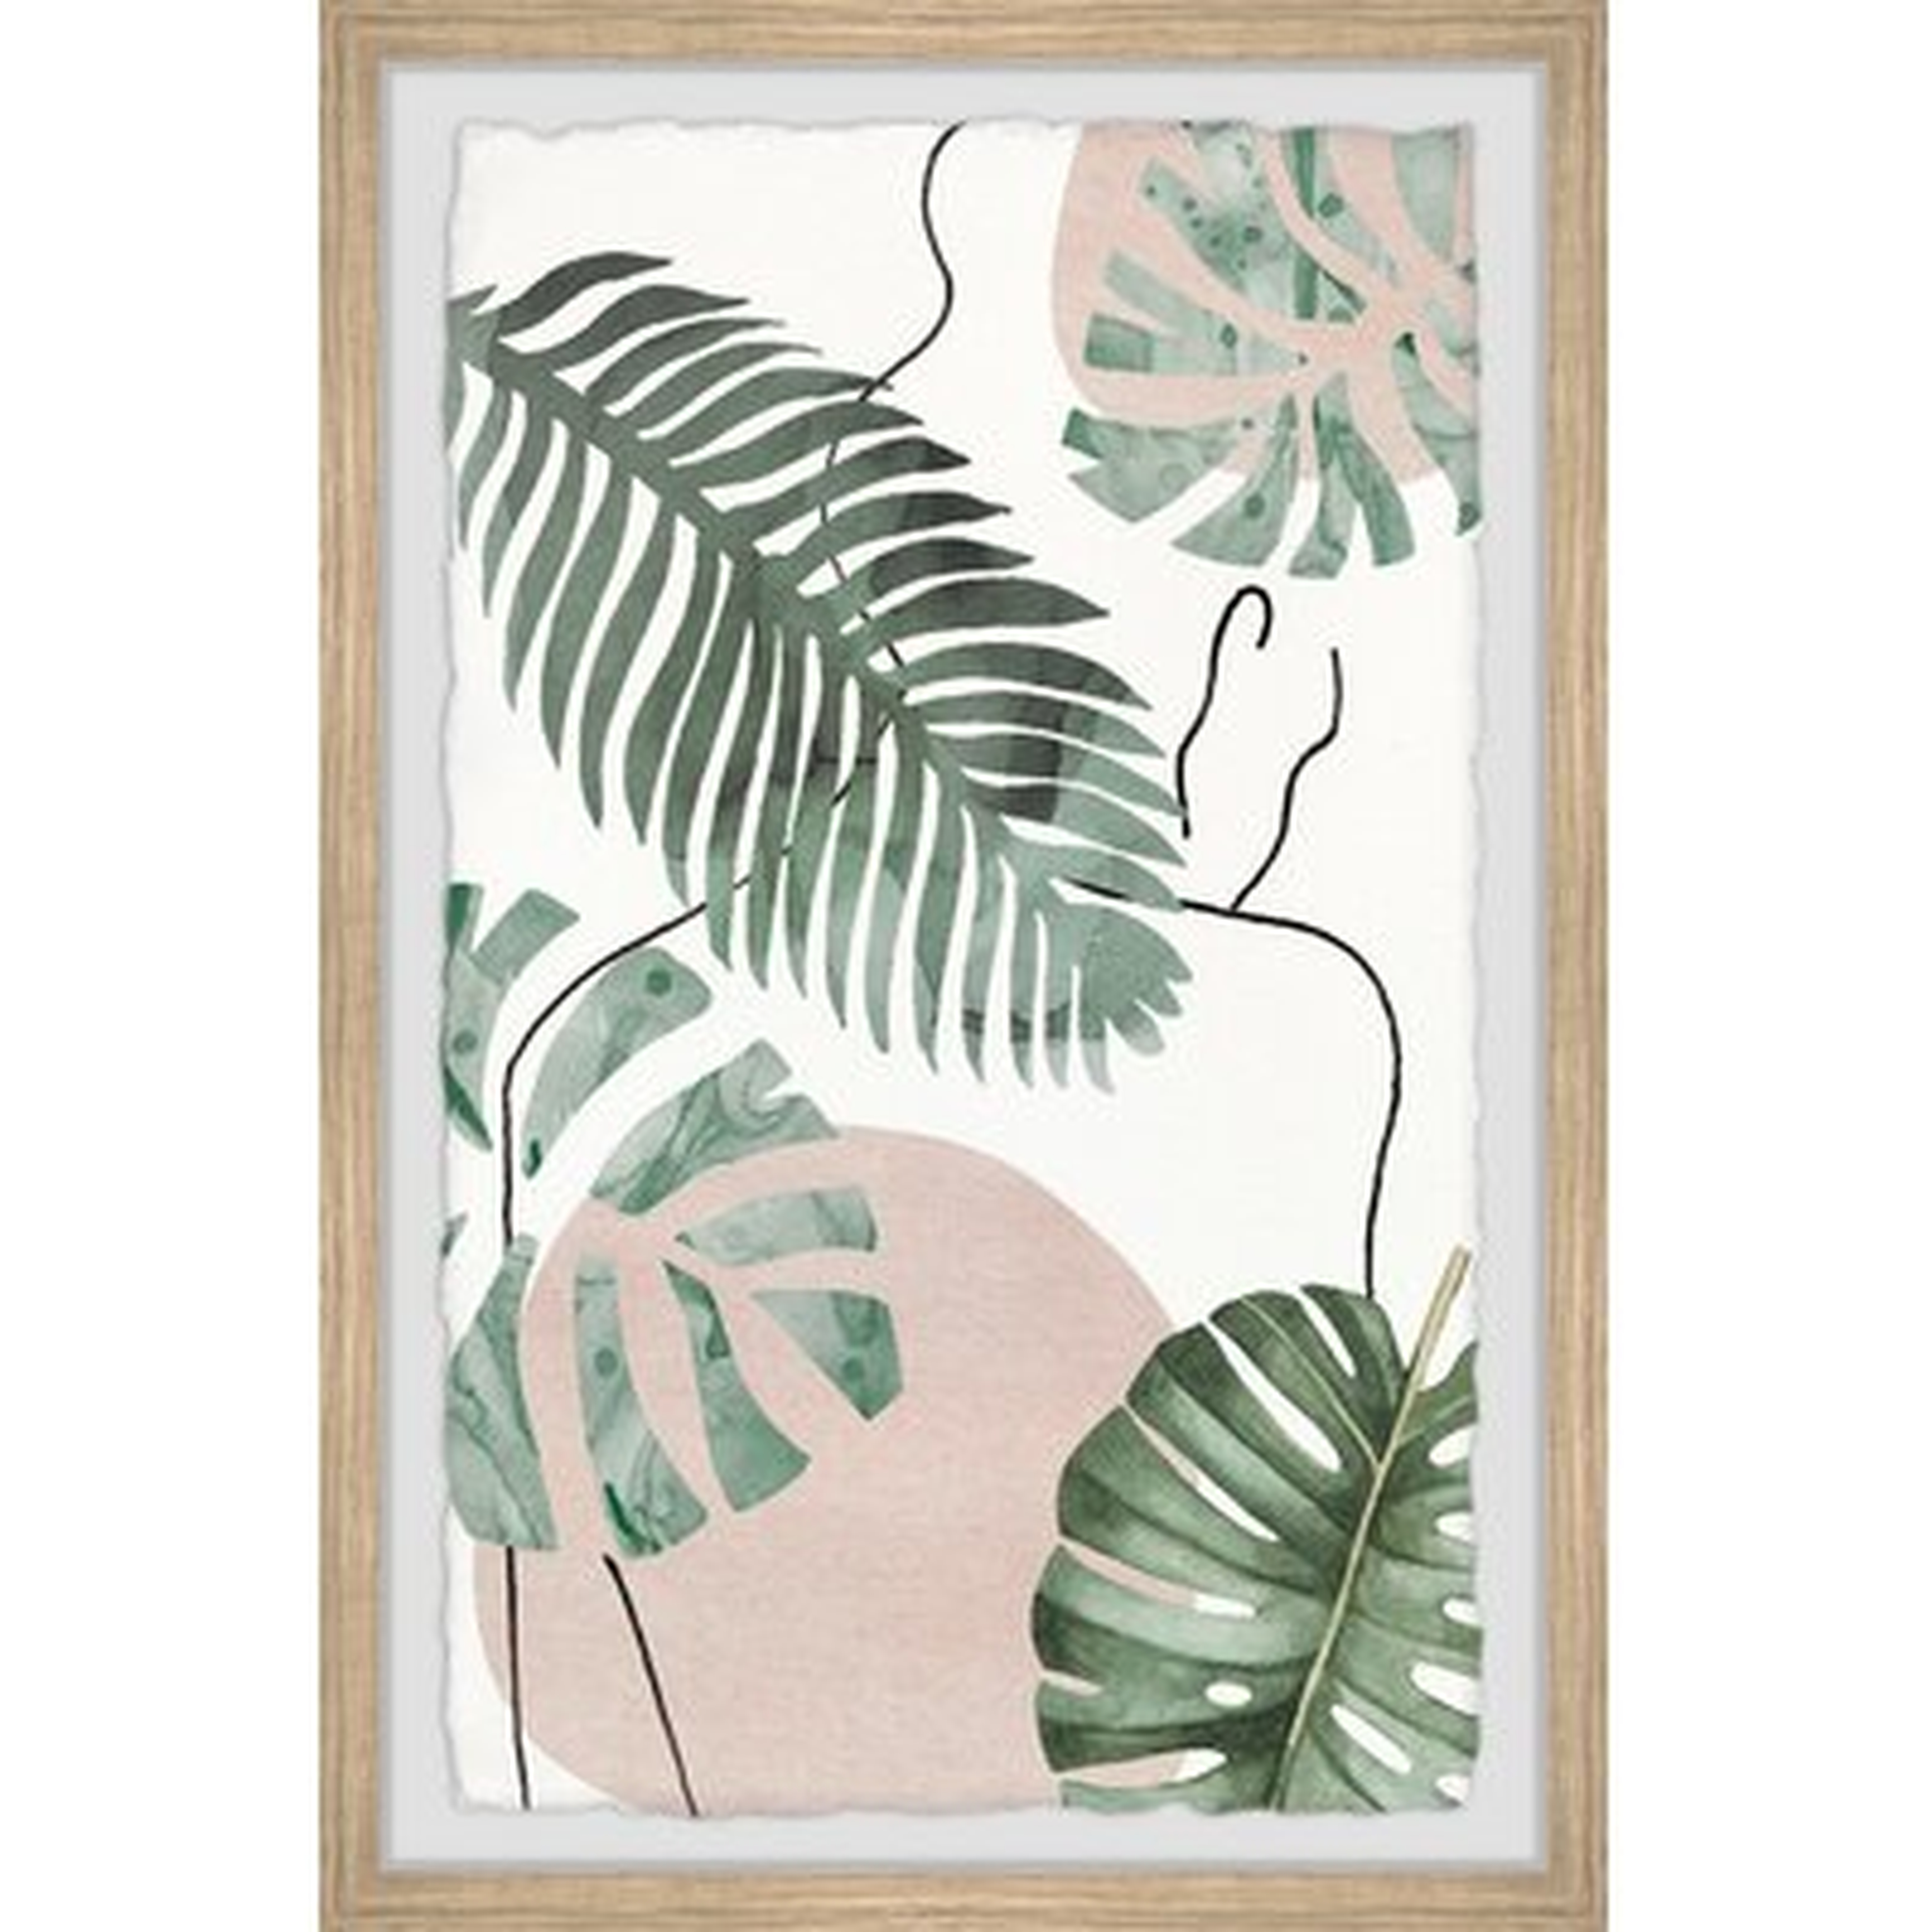 Big Leaf II by Parvez Taj - Picture Frame Painting Print on Paper - Wayfair